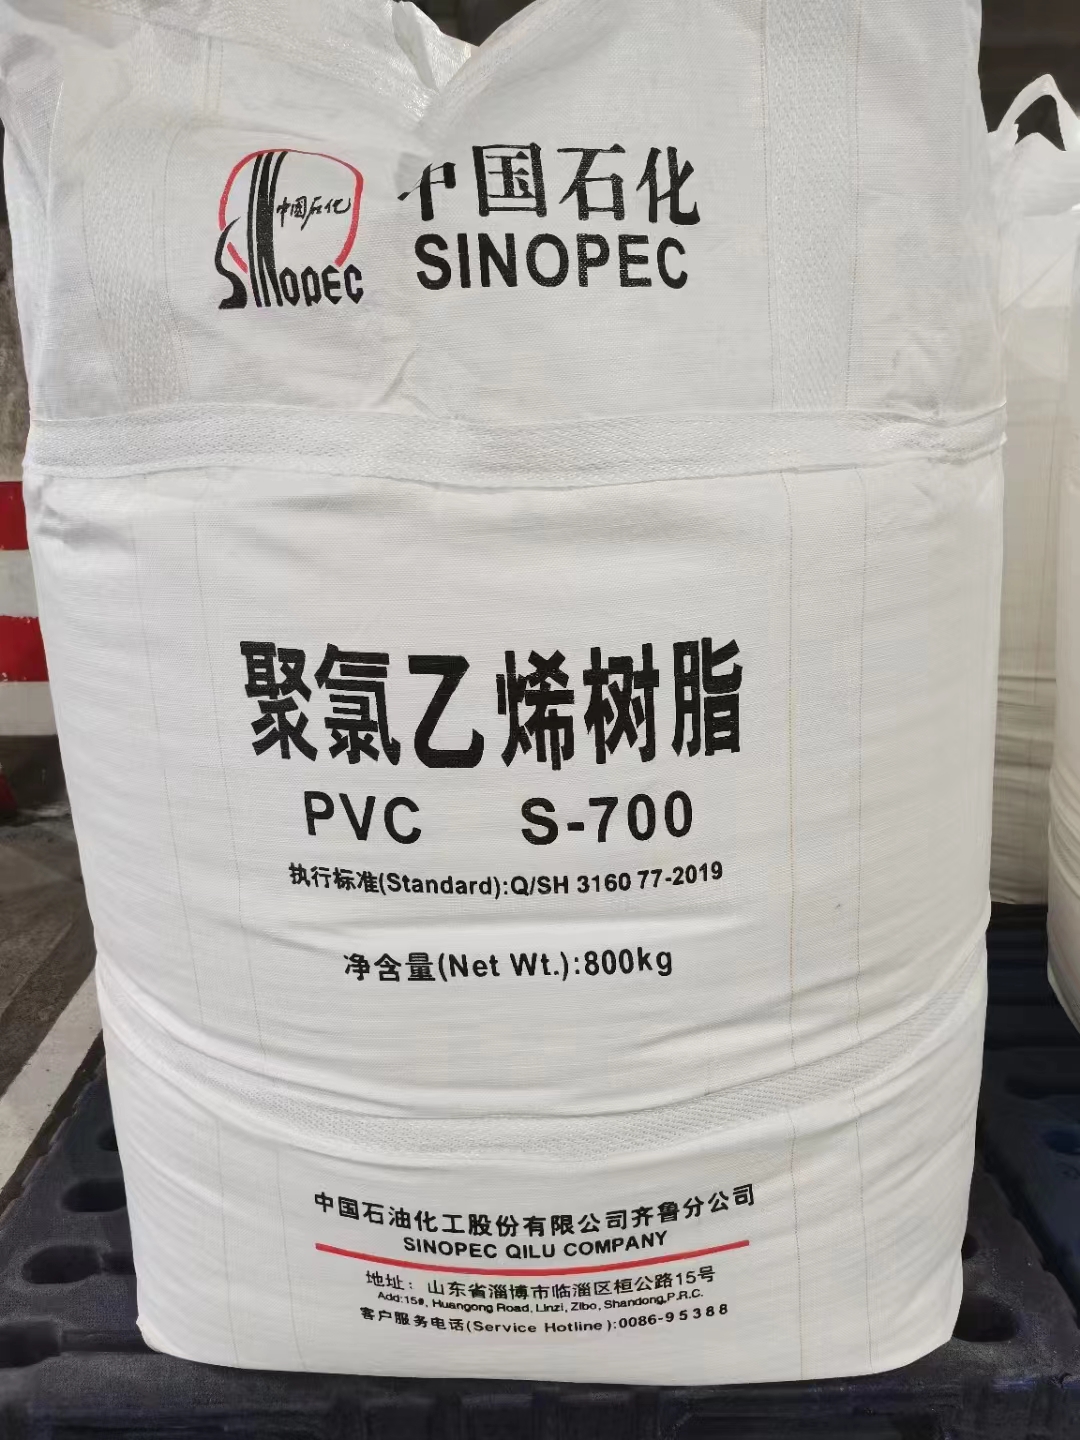 parobahan kauntungan panganyarna pikeun sumber produksi PVC béda